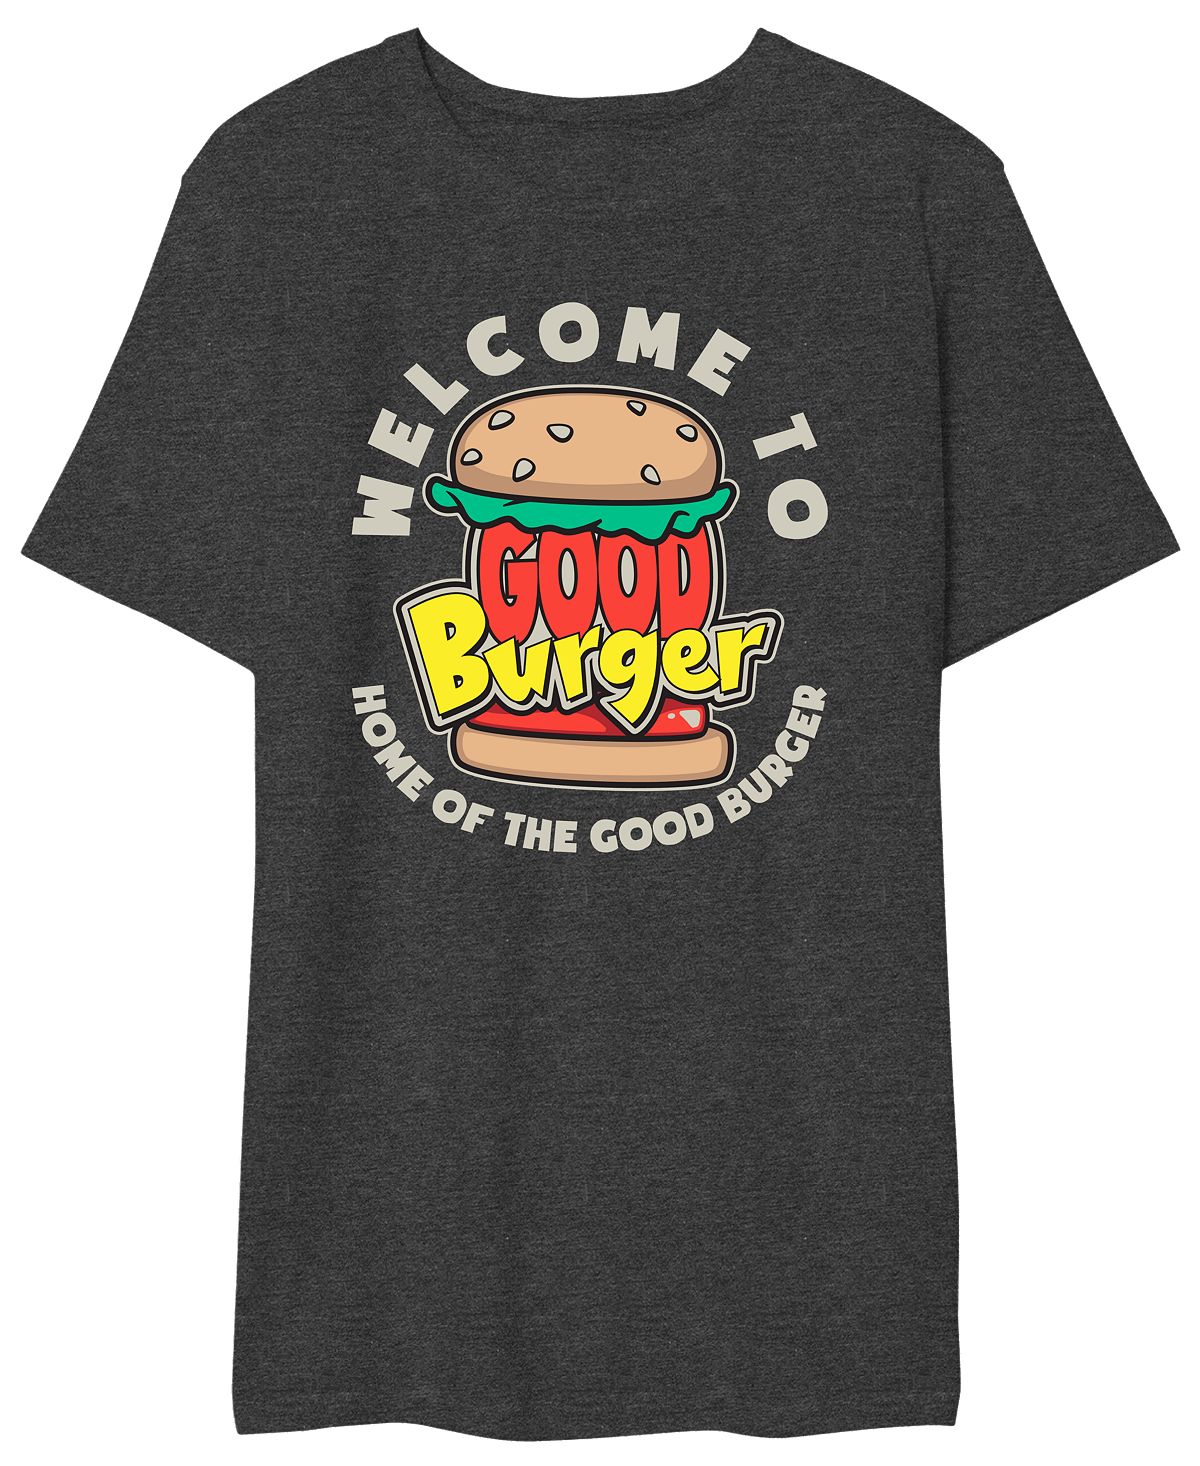 Мужская футболка с надписью good burger добро пожаловать в good burger AIRWAVES, мульти beef burger 10 100 g